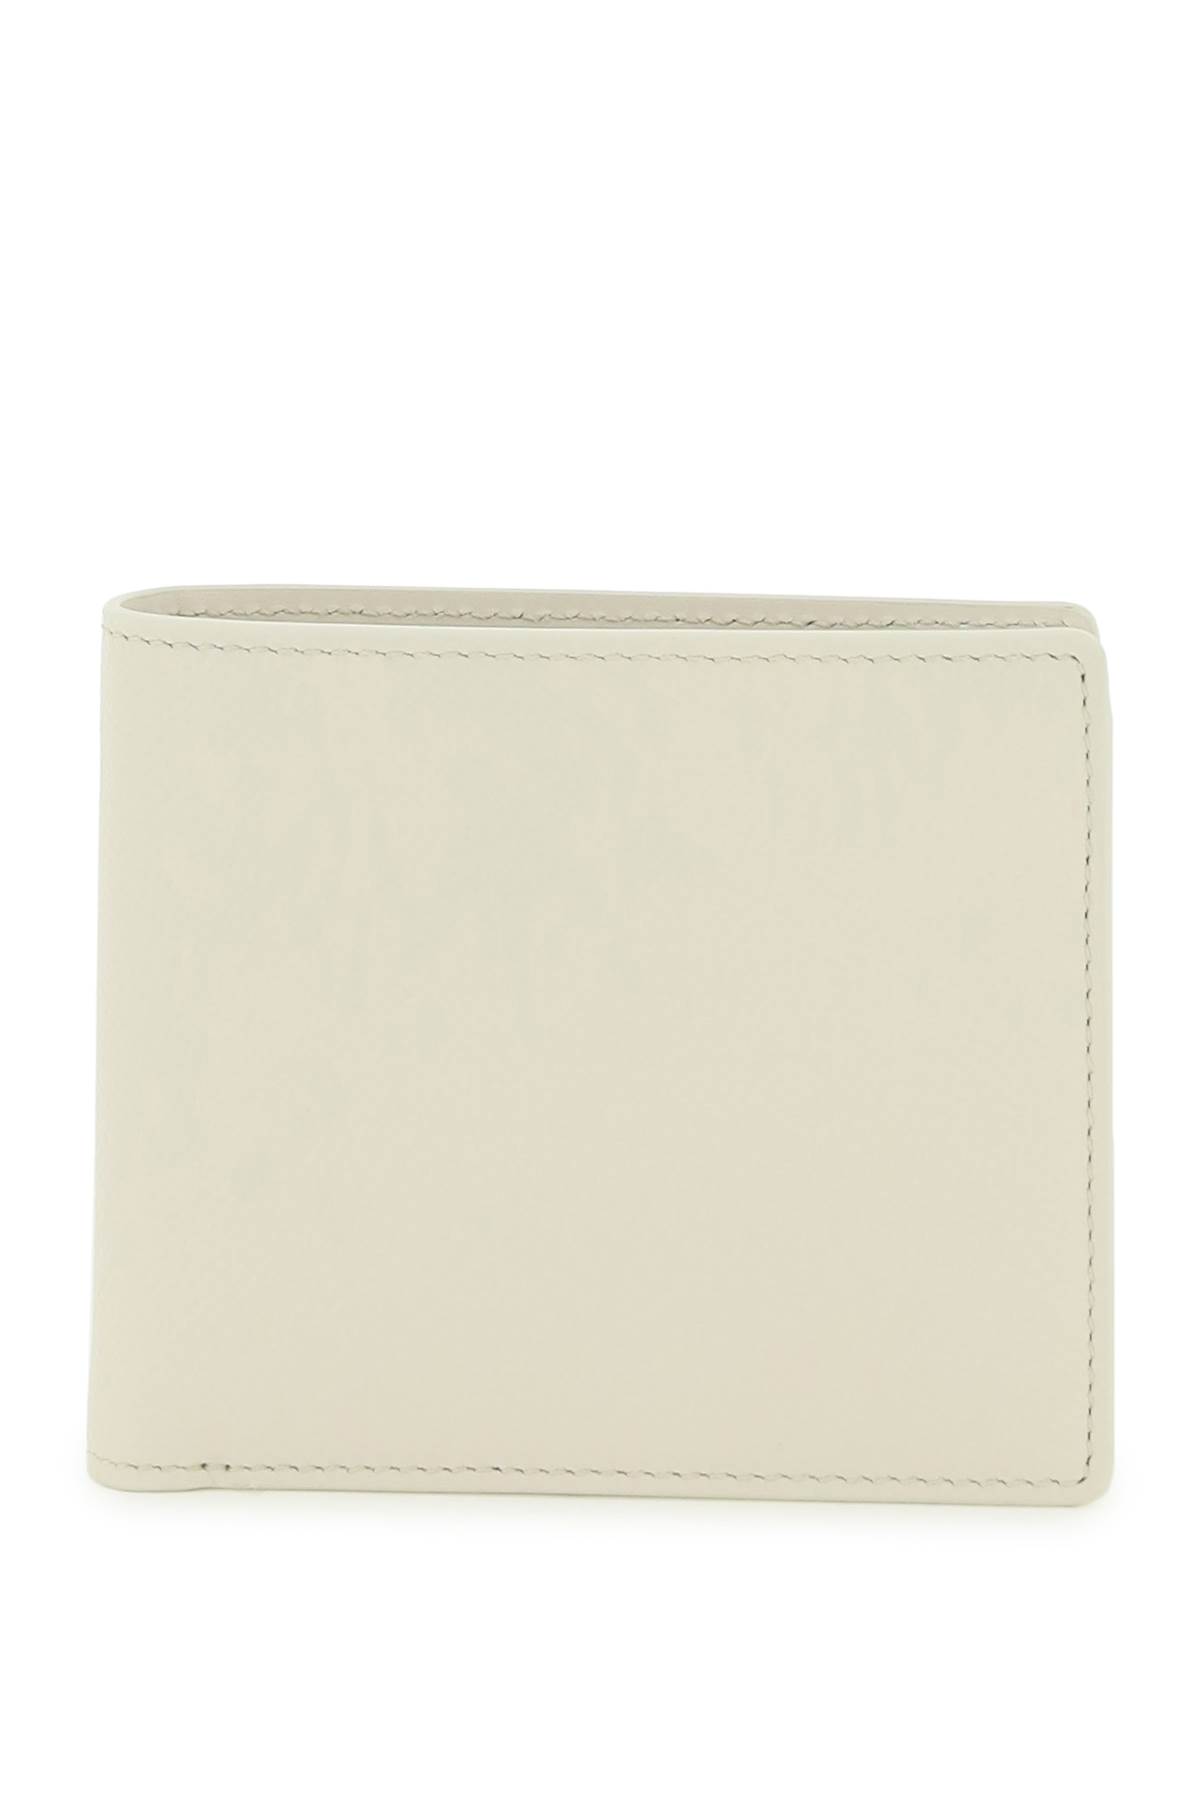 Maison Margiela Grained Leather Bi-fold Wallet